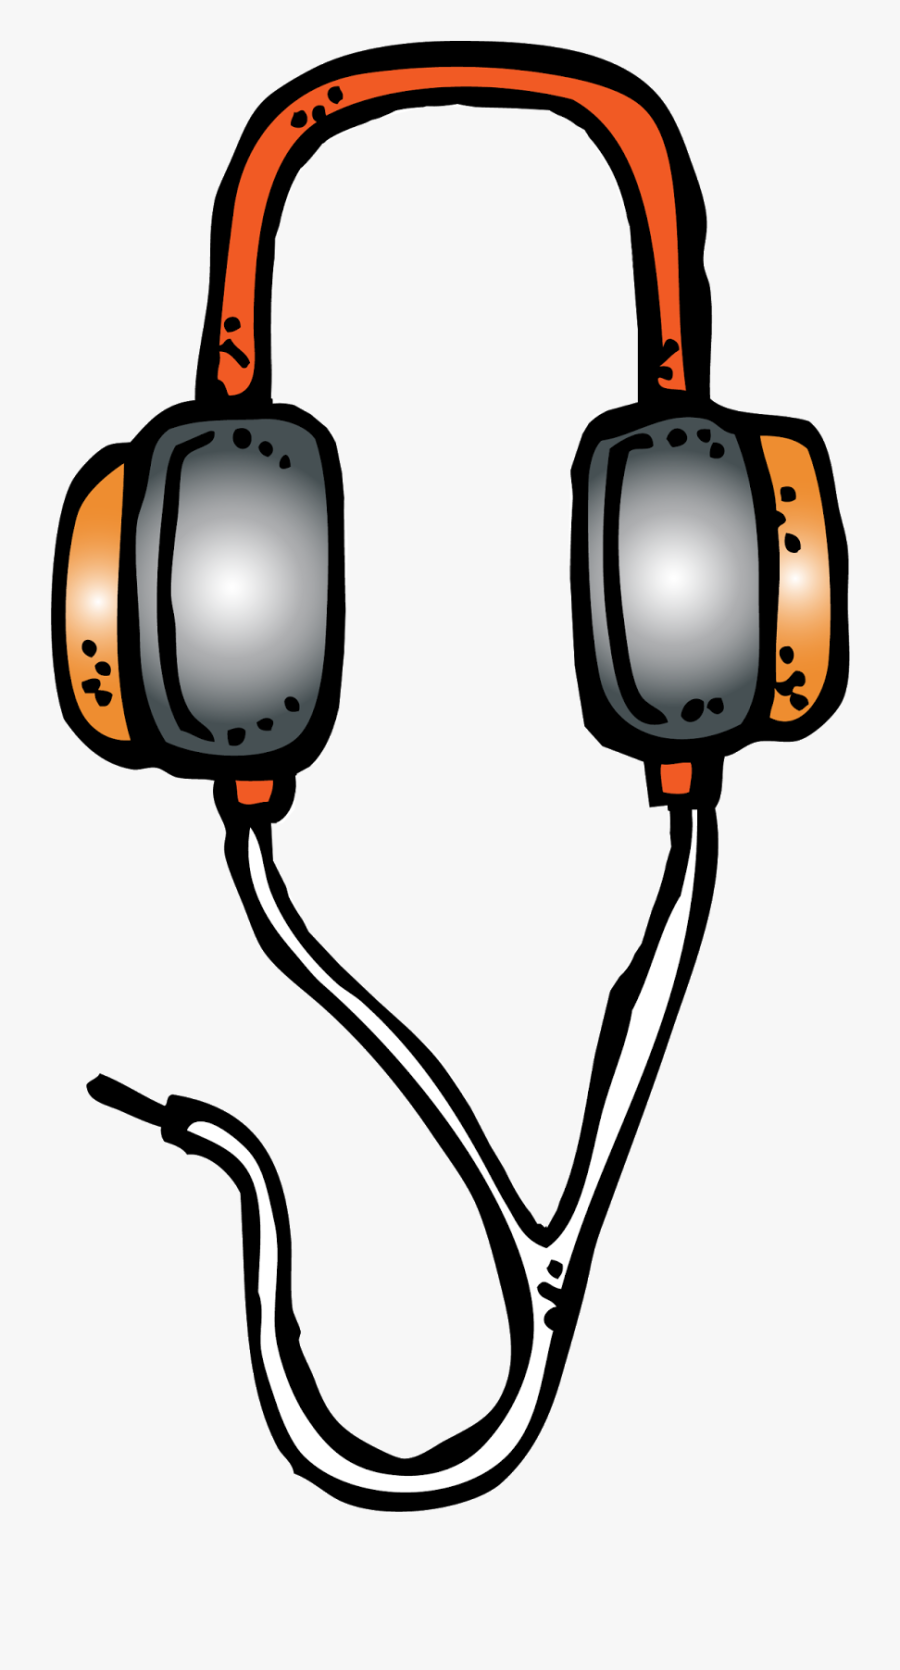 Technology Clipart Melonheadz - Melonheadz Clip Art Headphones, Transparent Clipart